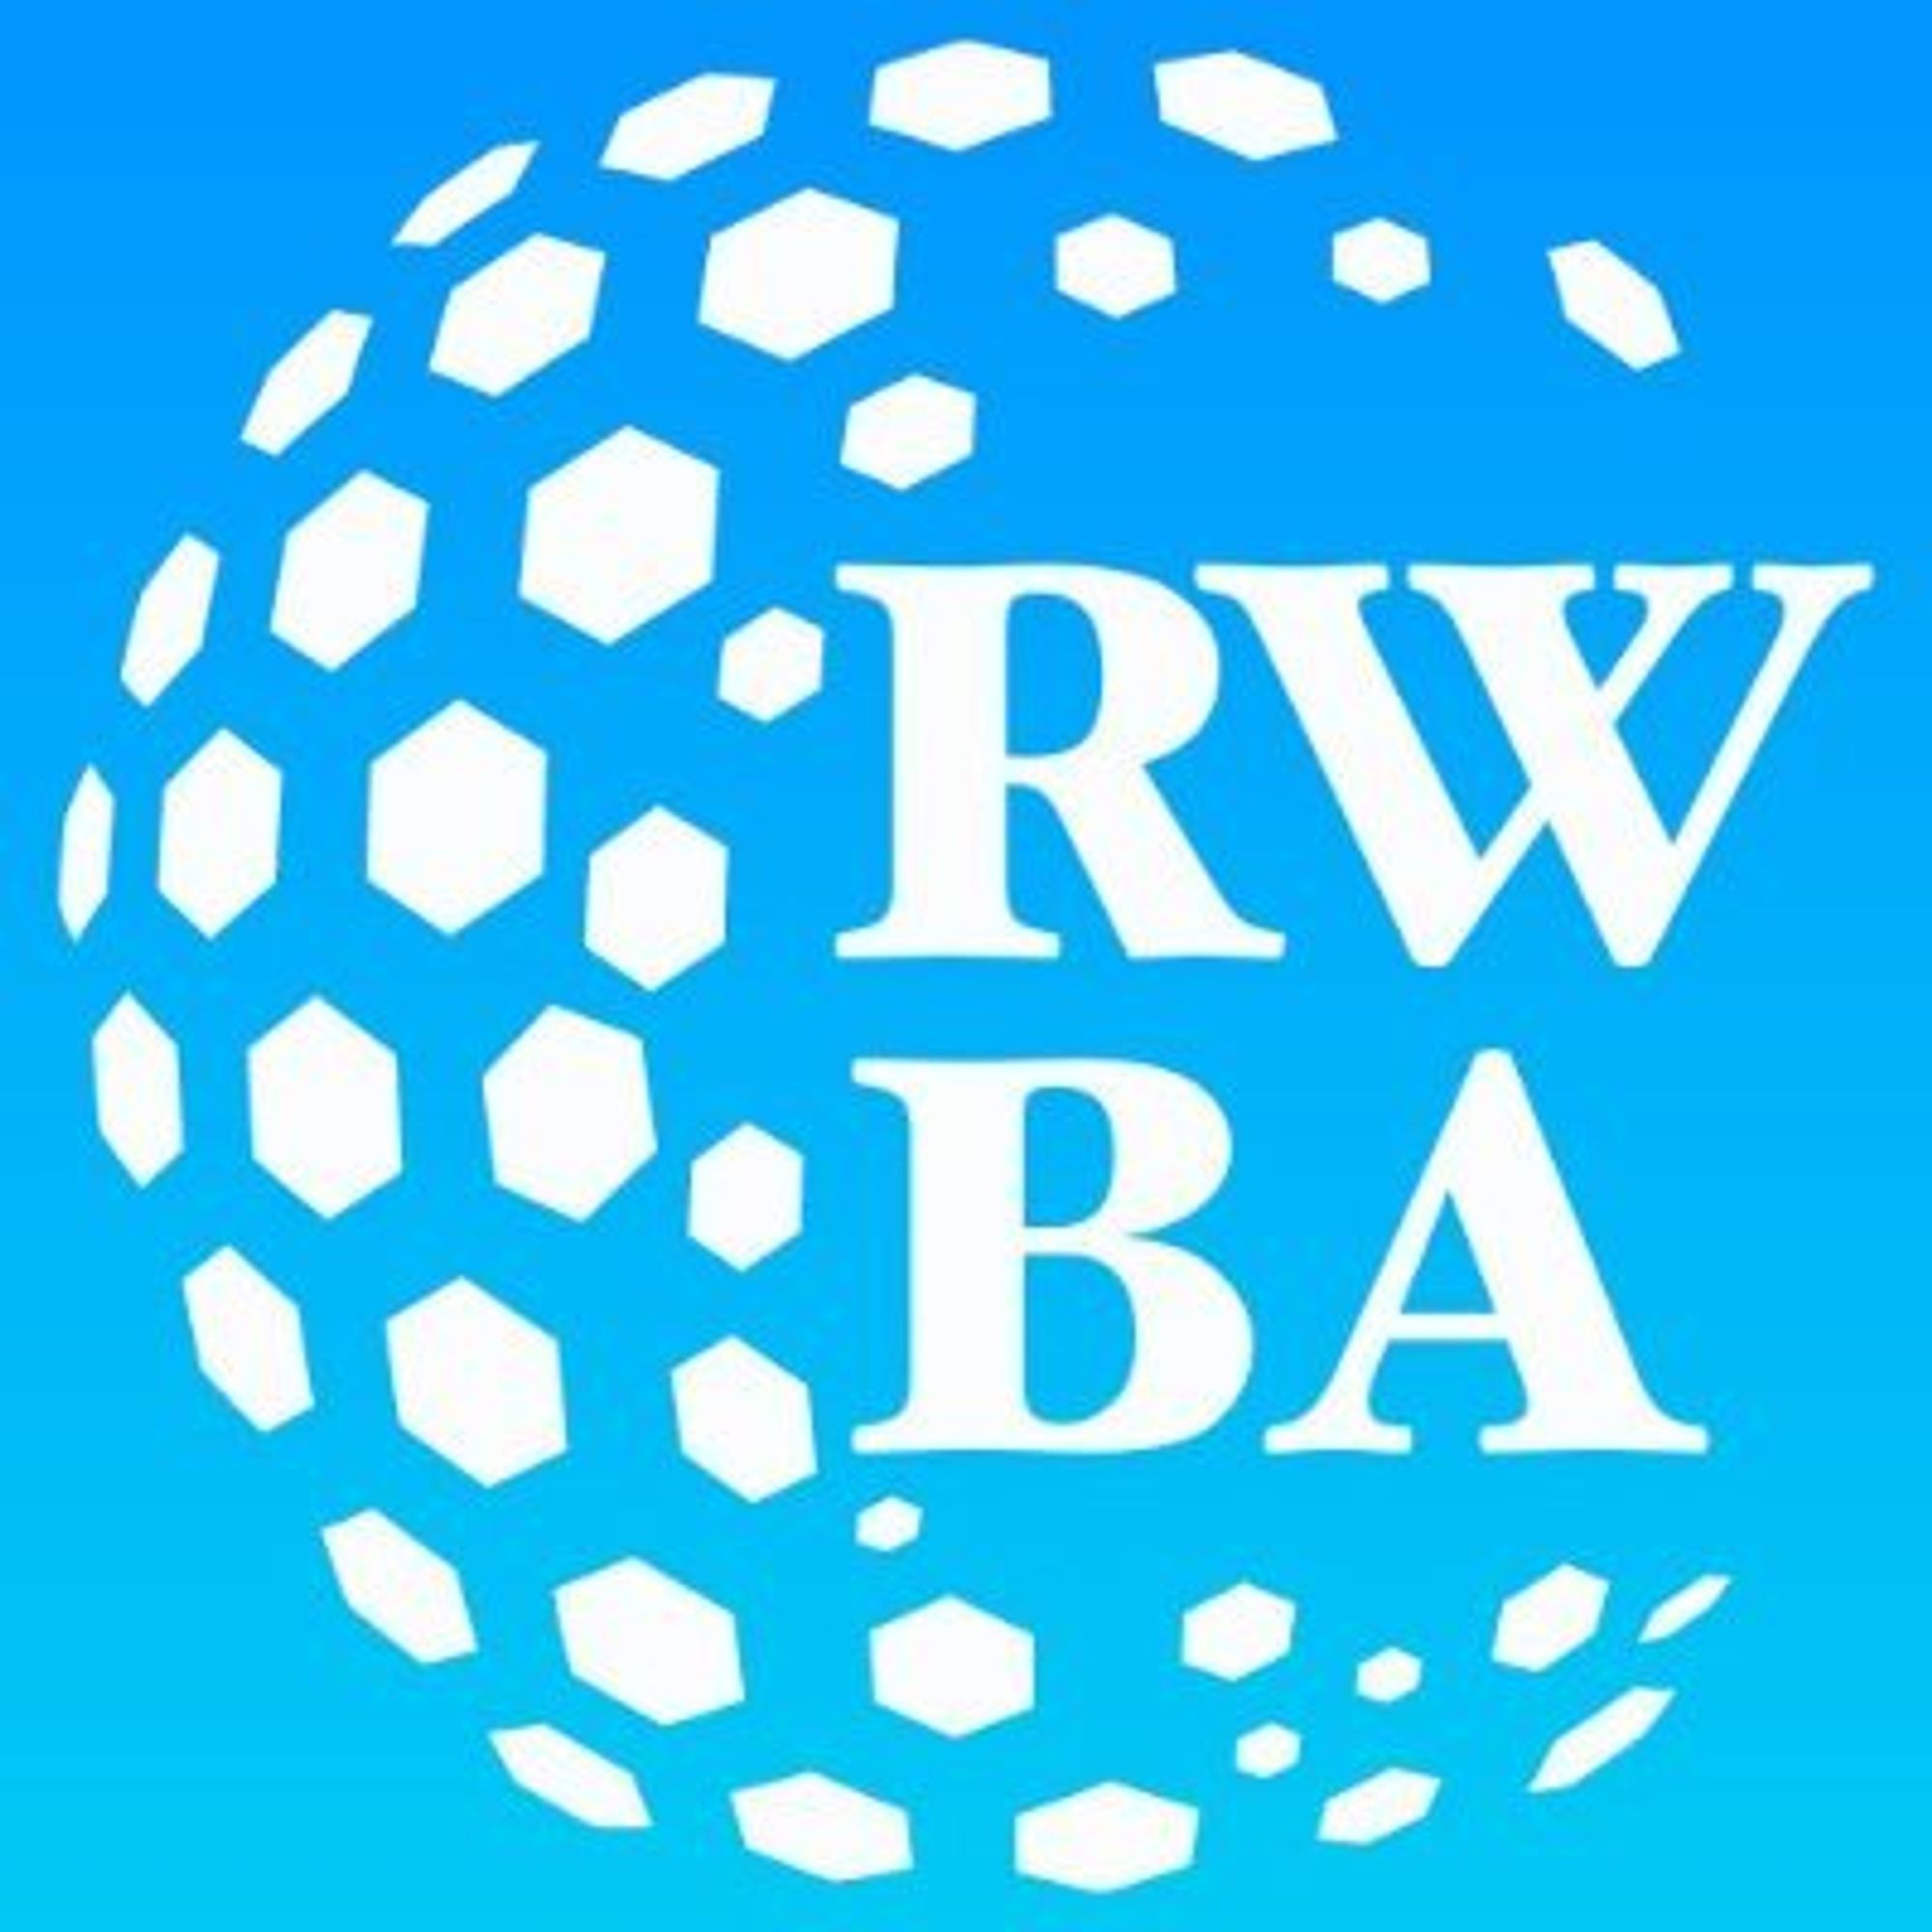 Real World Blockchain Alliance (RWBA)